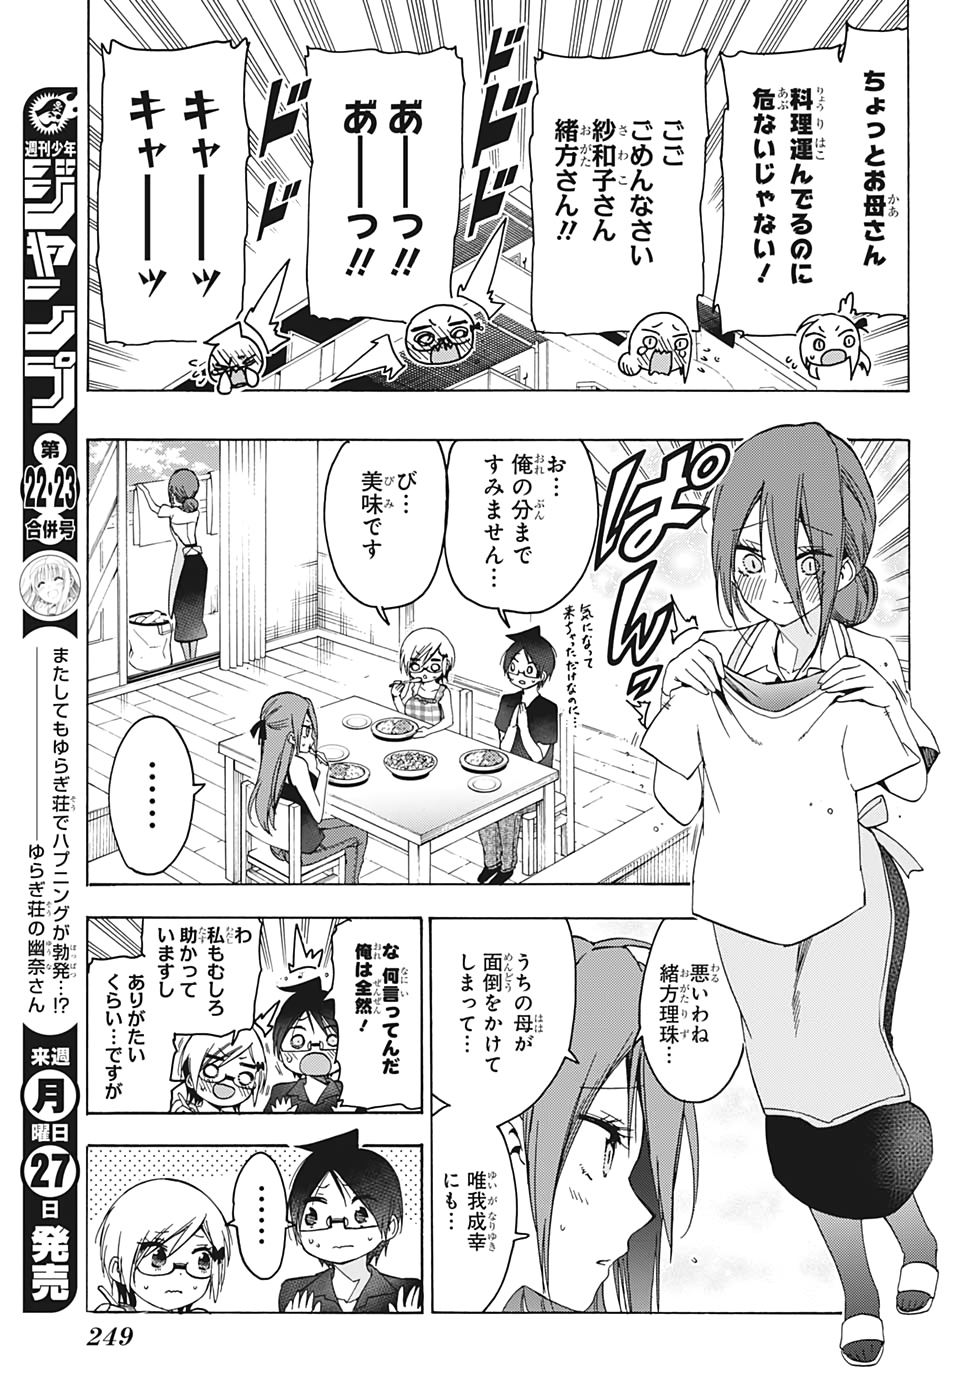 Bokutachi wa Benkyou ga Dekinai - Chapter 156 - Page 3